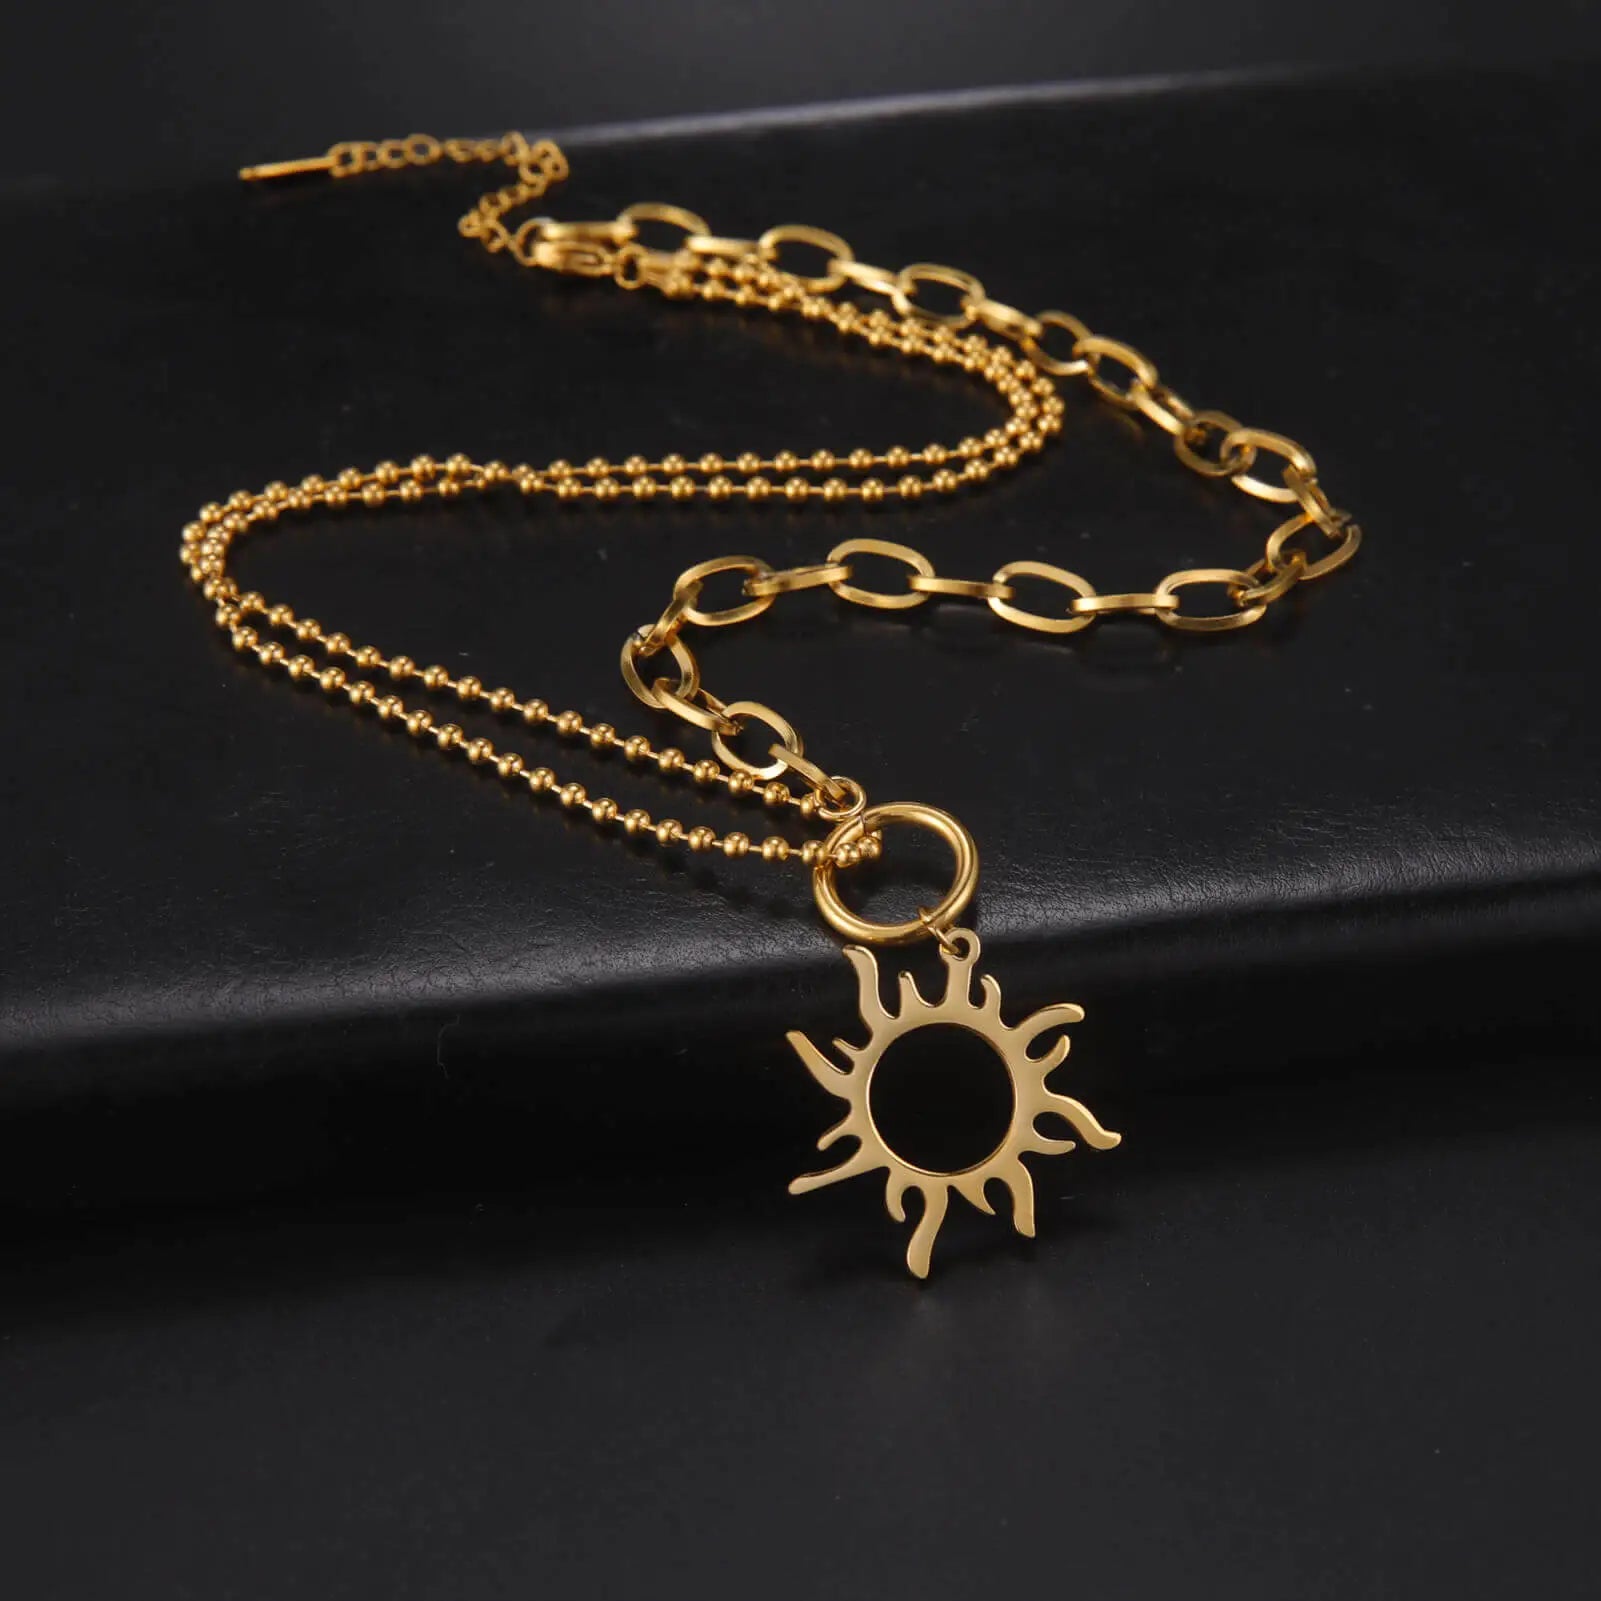 Collier soleil: Un bijou lumineux et symbolique